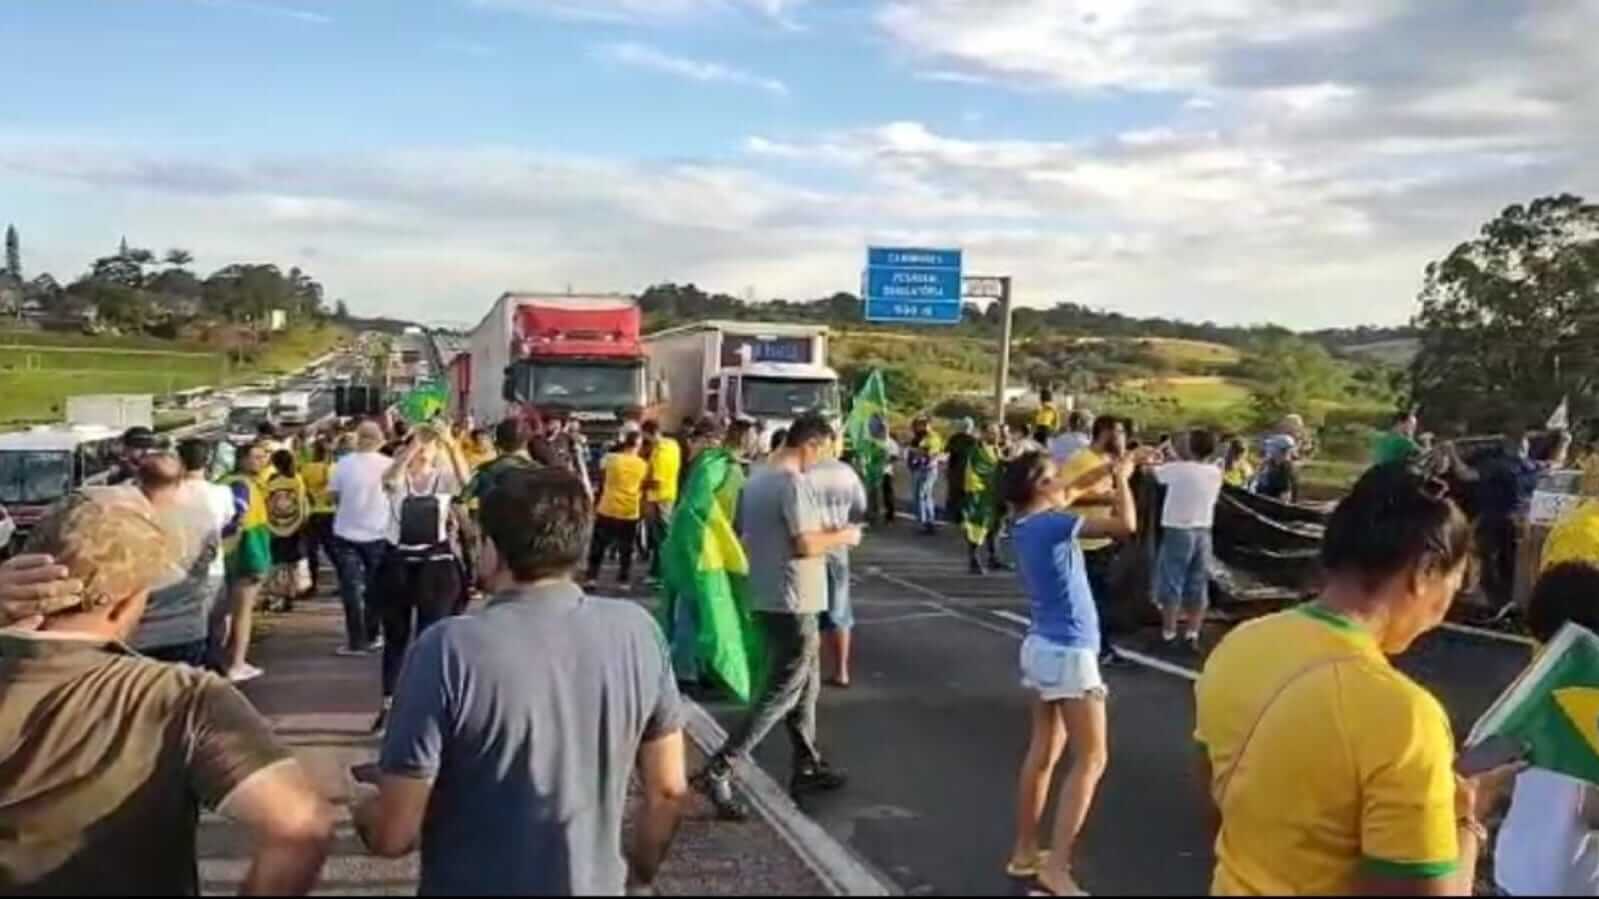 Manifestantes bloqueando rodovia em Jundiaí